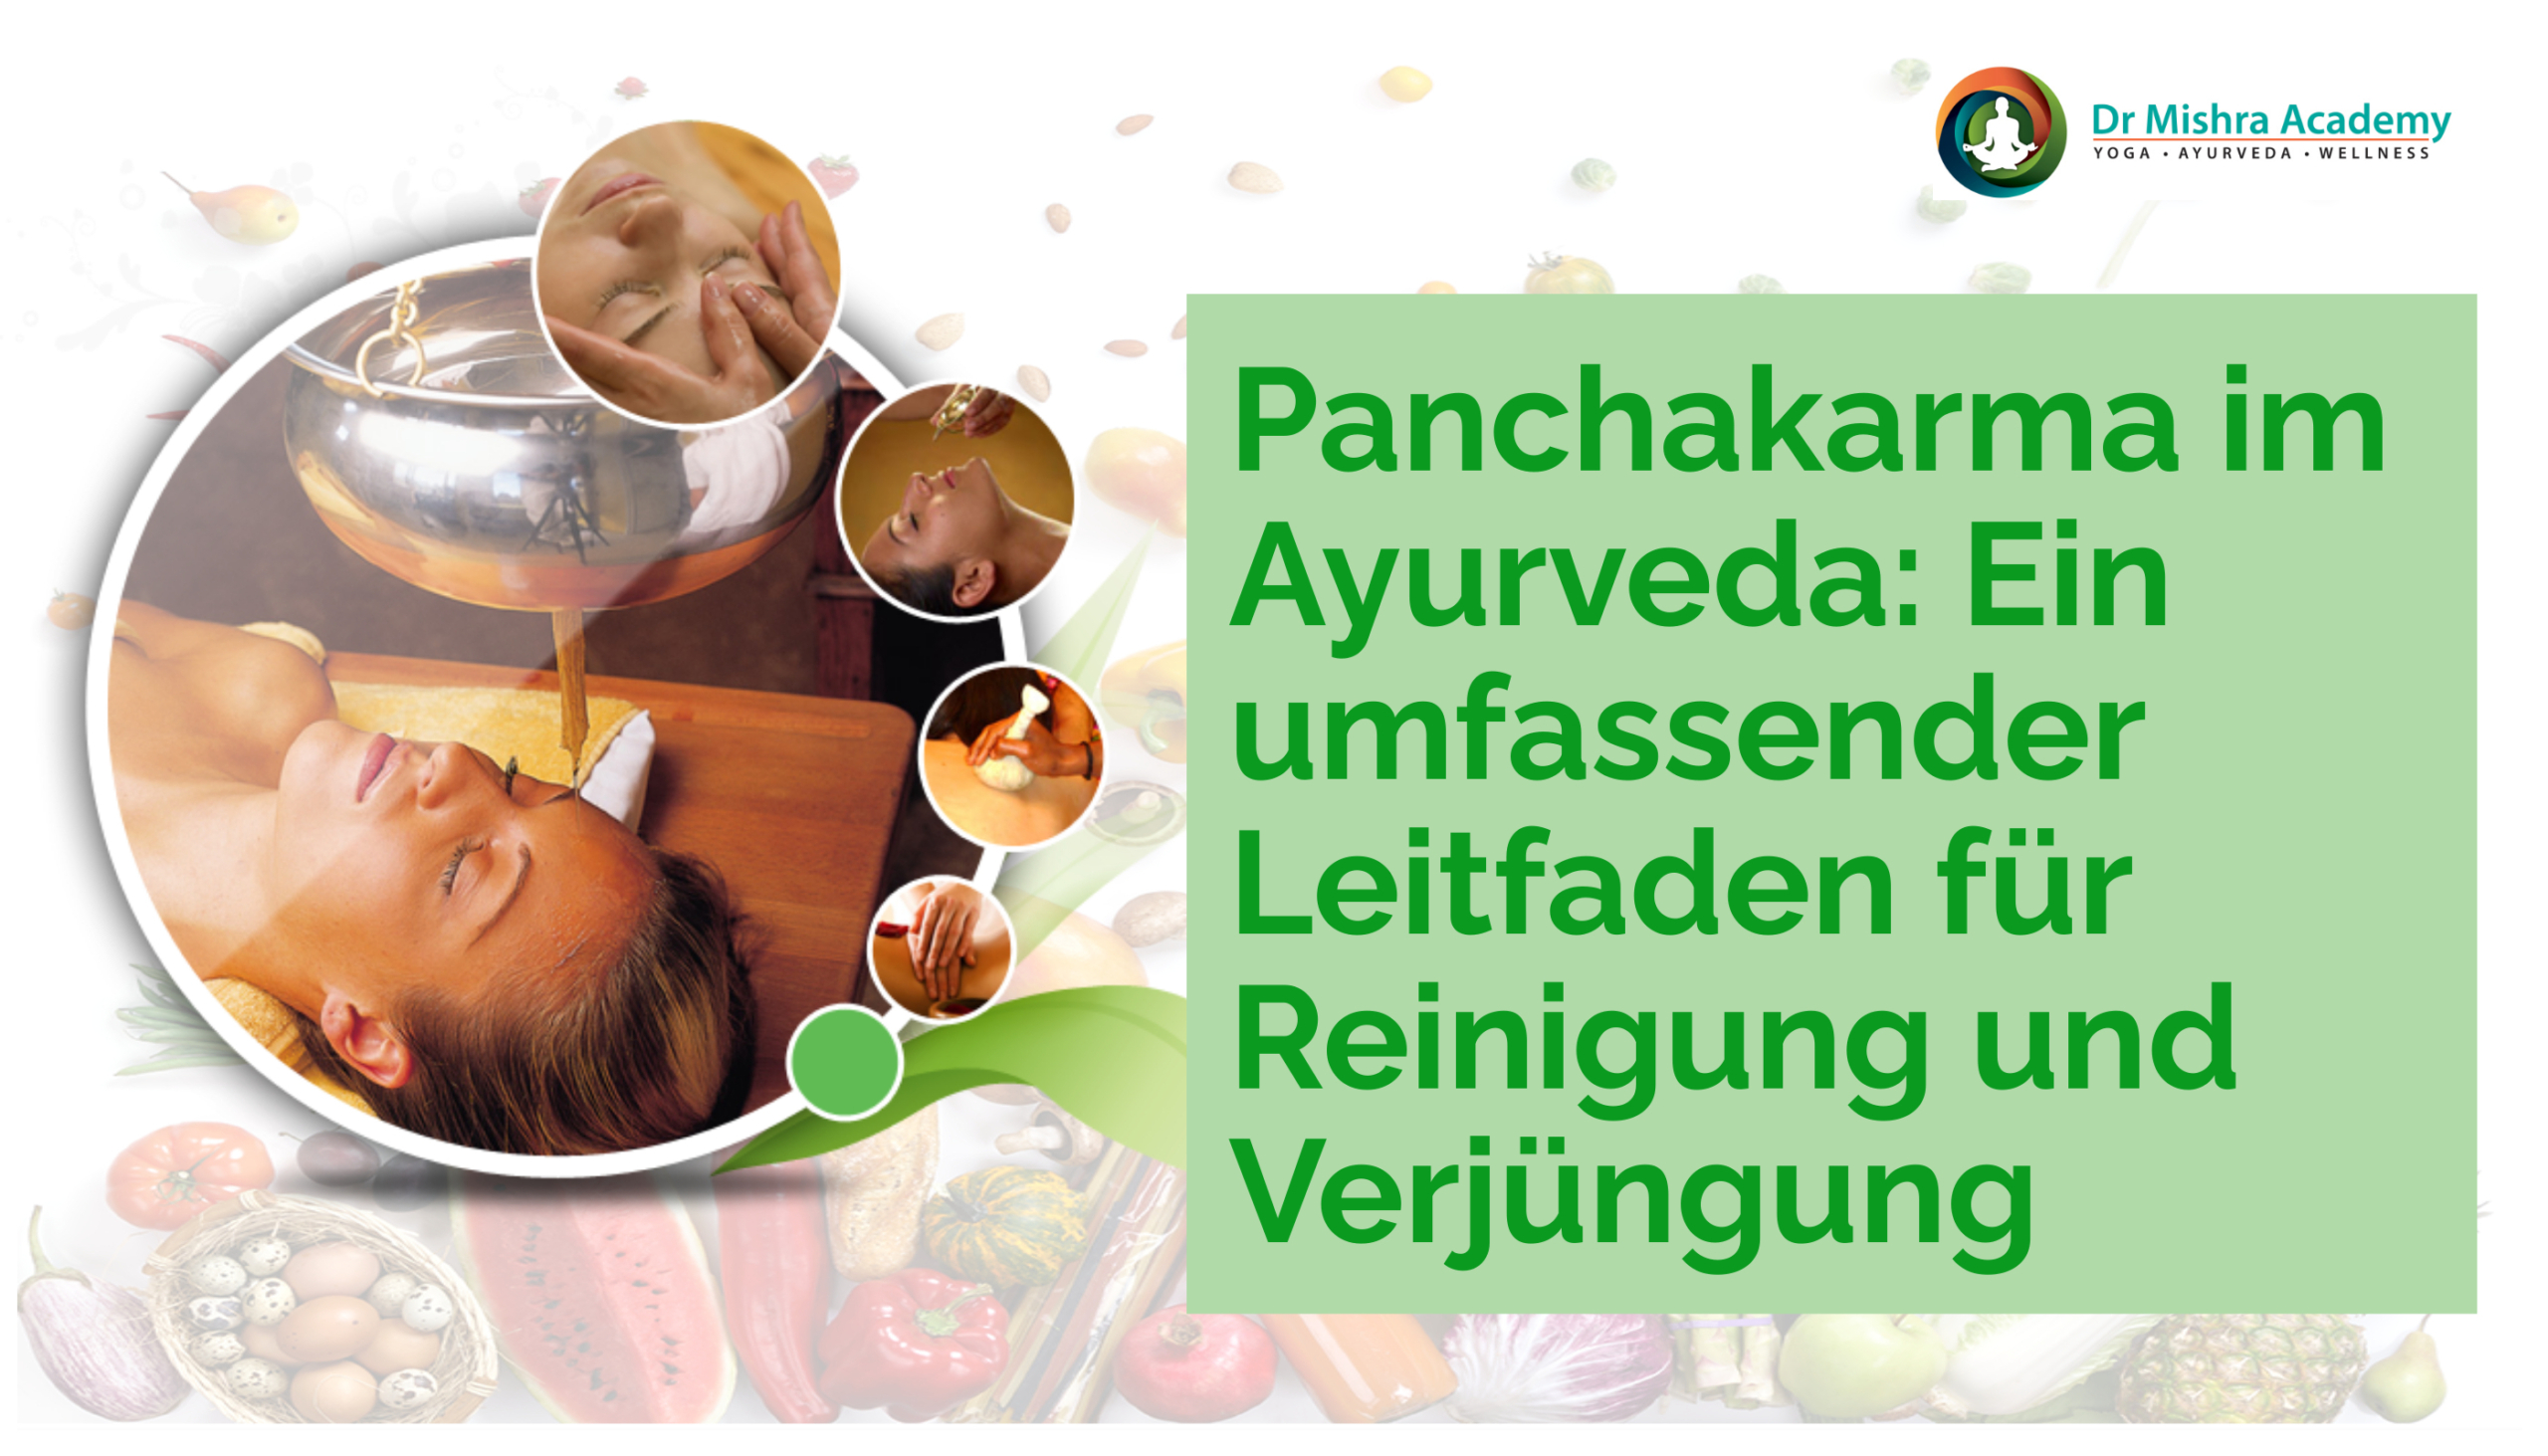 Panchakarma im Ayurveda Ein umfassender Leitfaden für Reinigung und Verjüngung